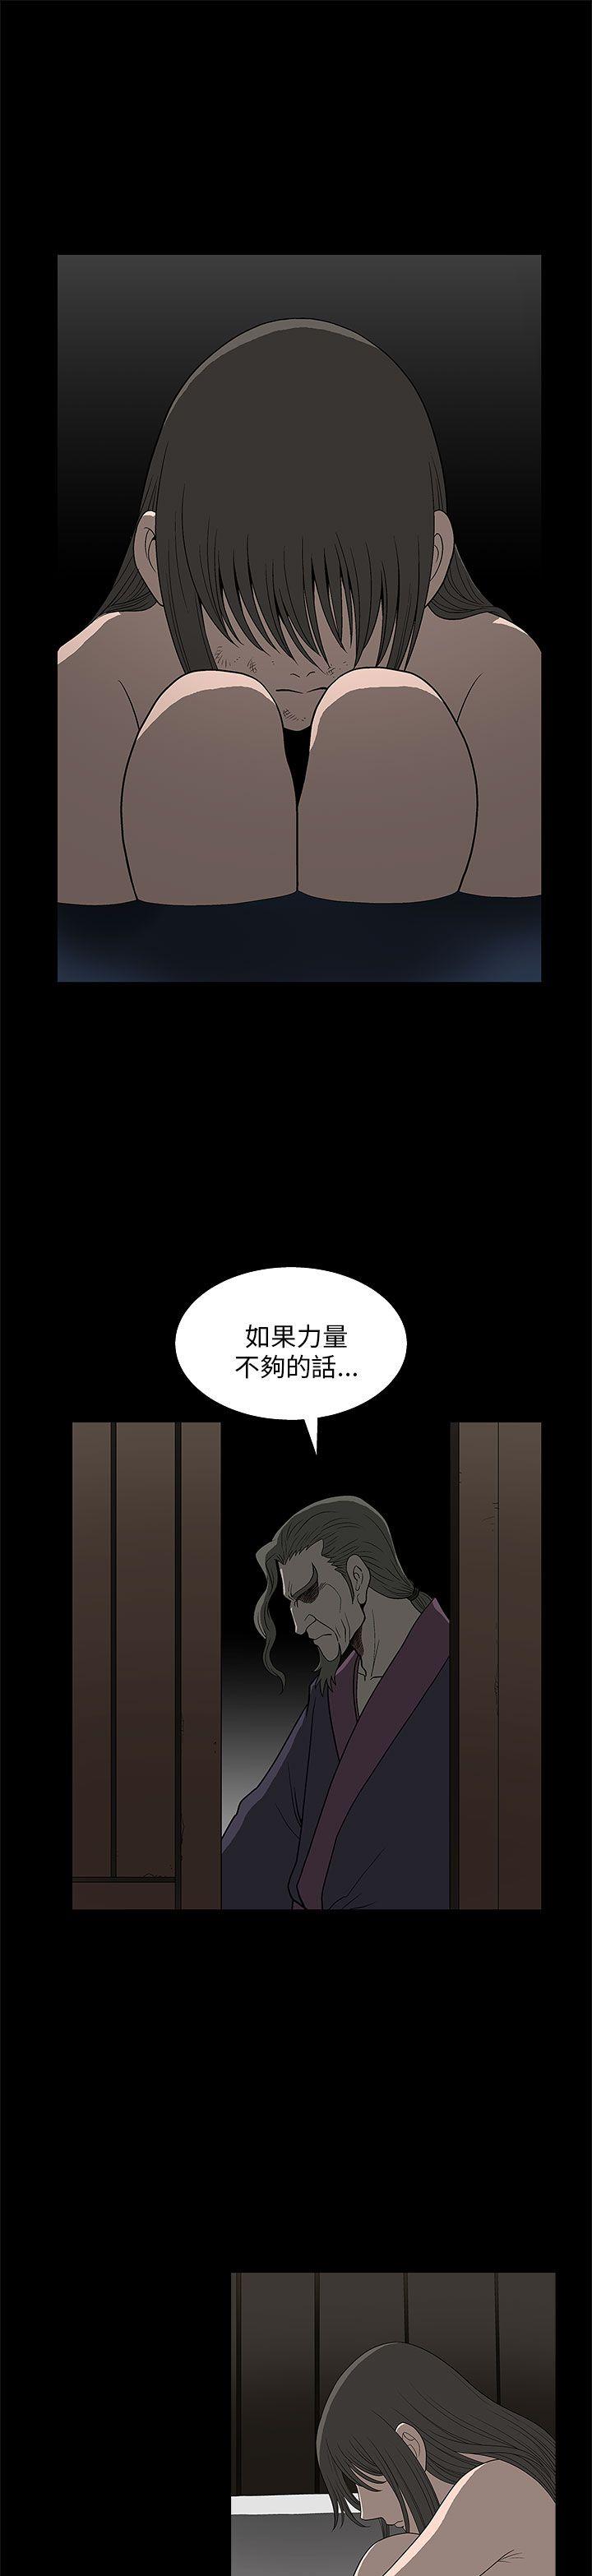 韩国污漫画 煦娜 第5话 10